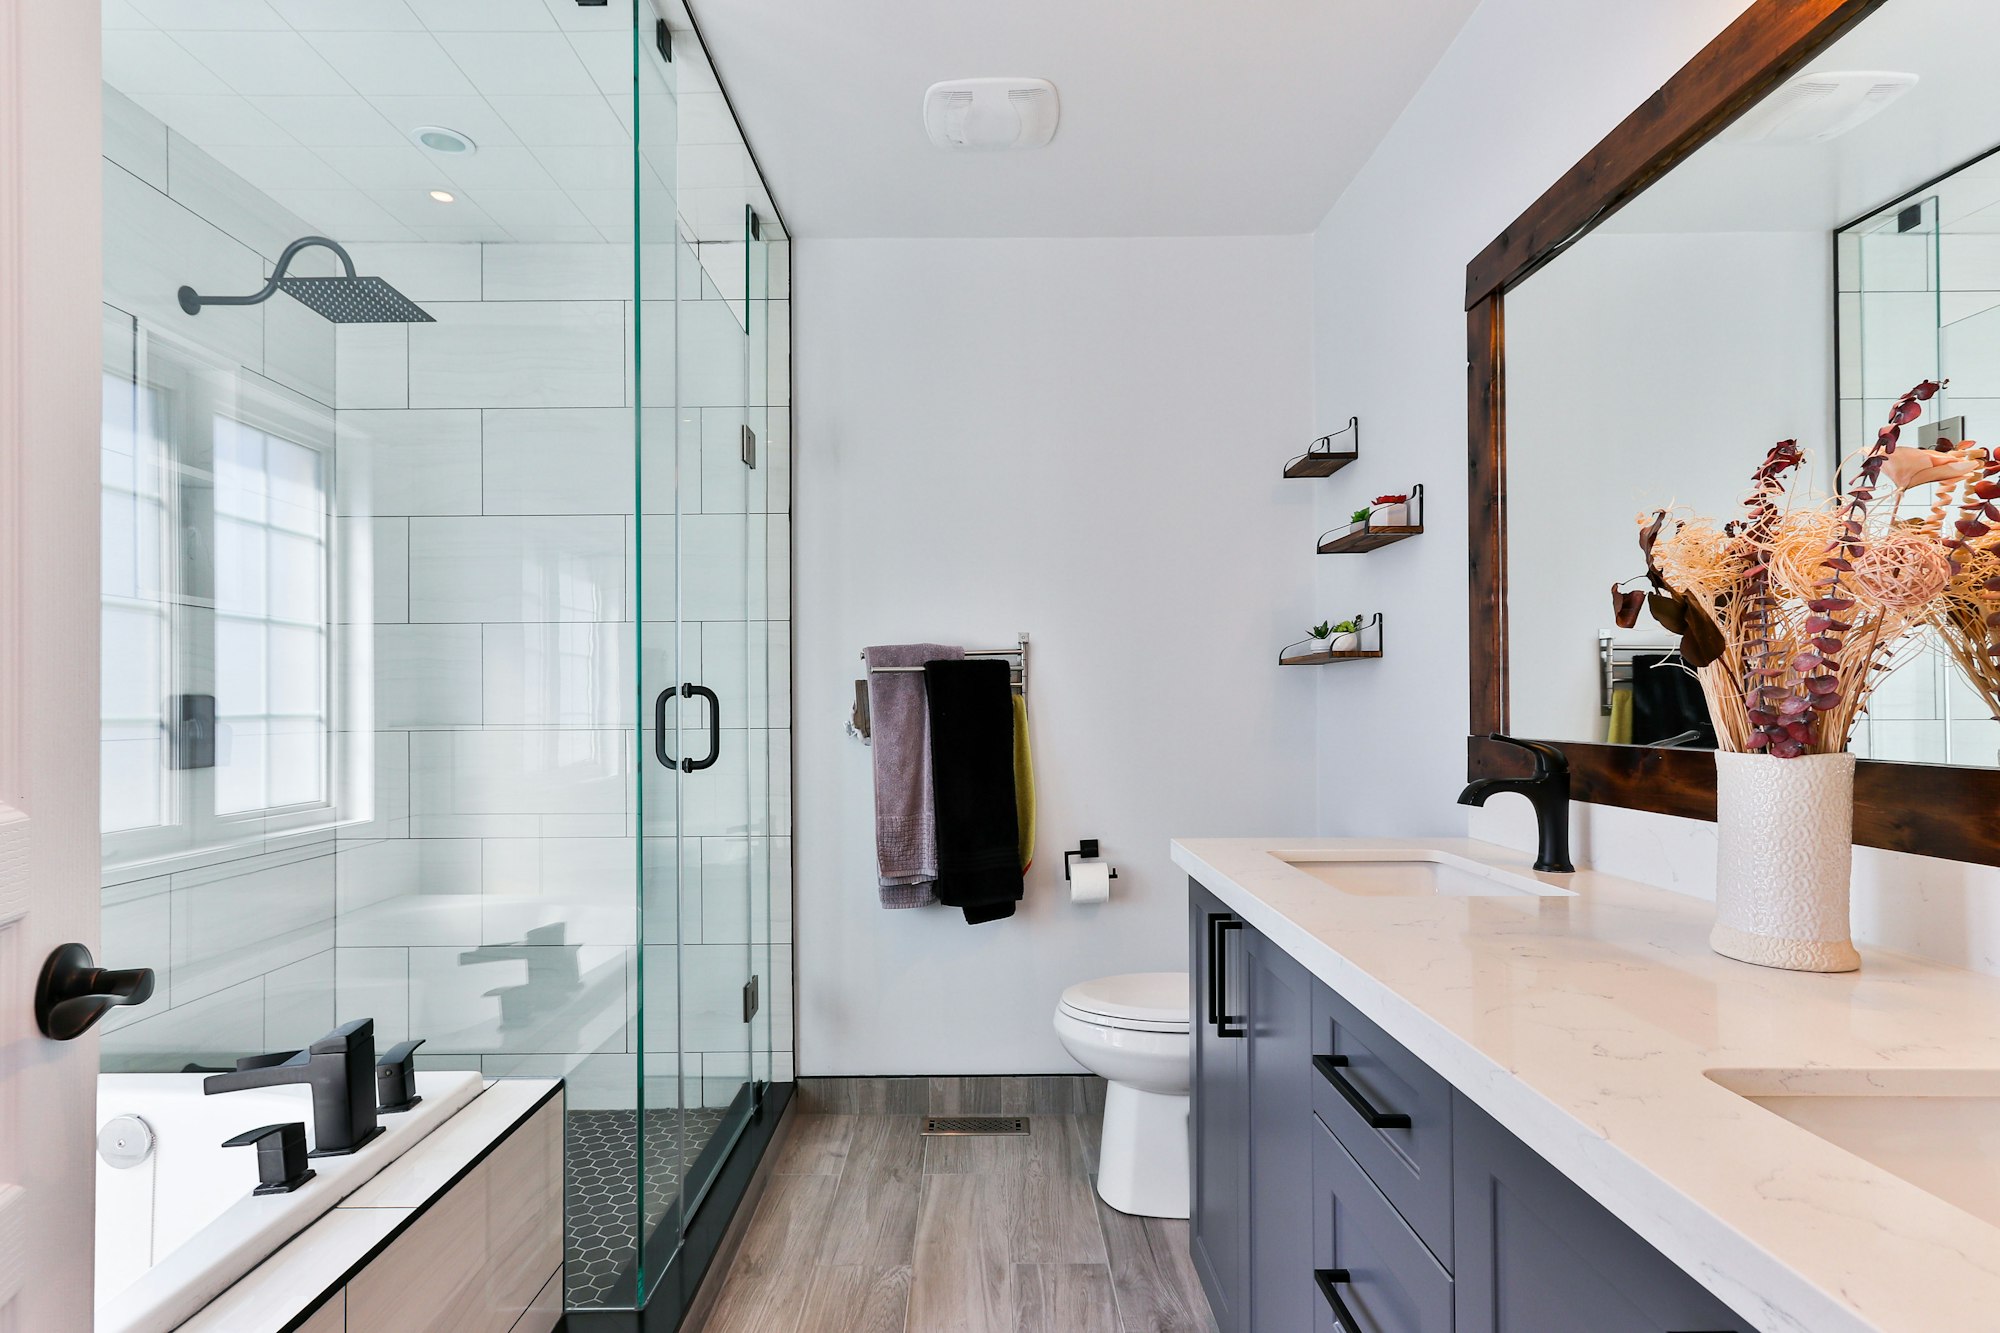 Kovanie na tvrdené sklo – čo budete potrebovať pri montáži sprchového kúta, steny, alebo sklenených dverí?